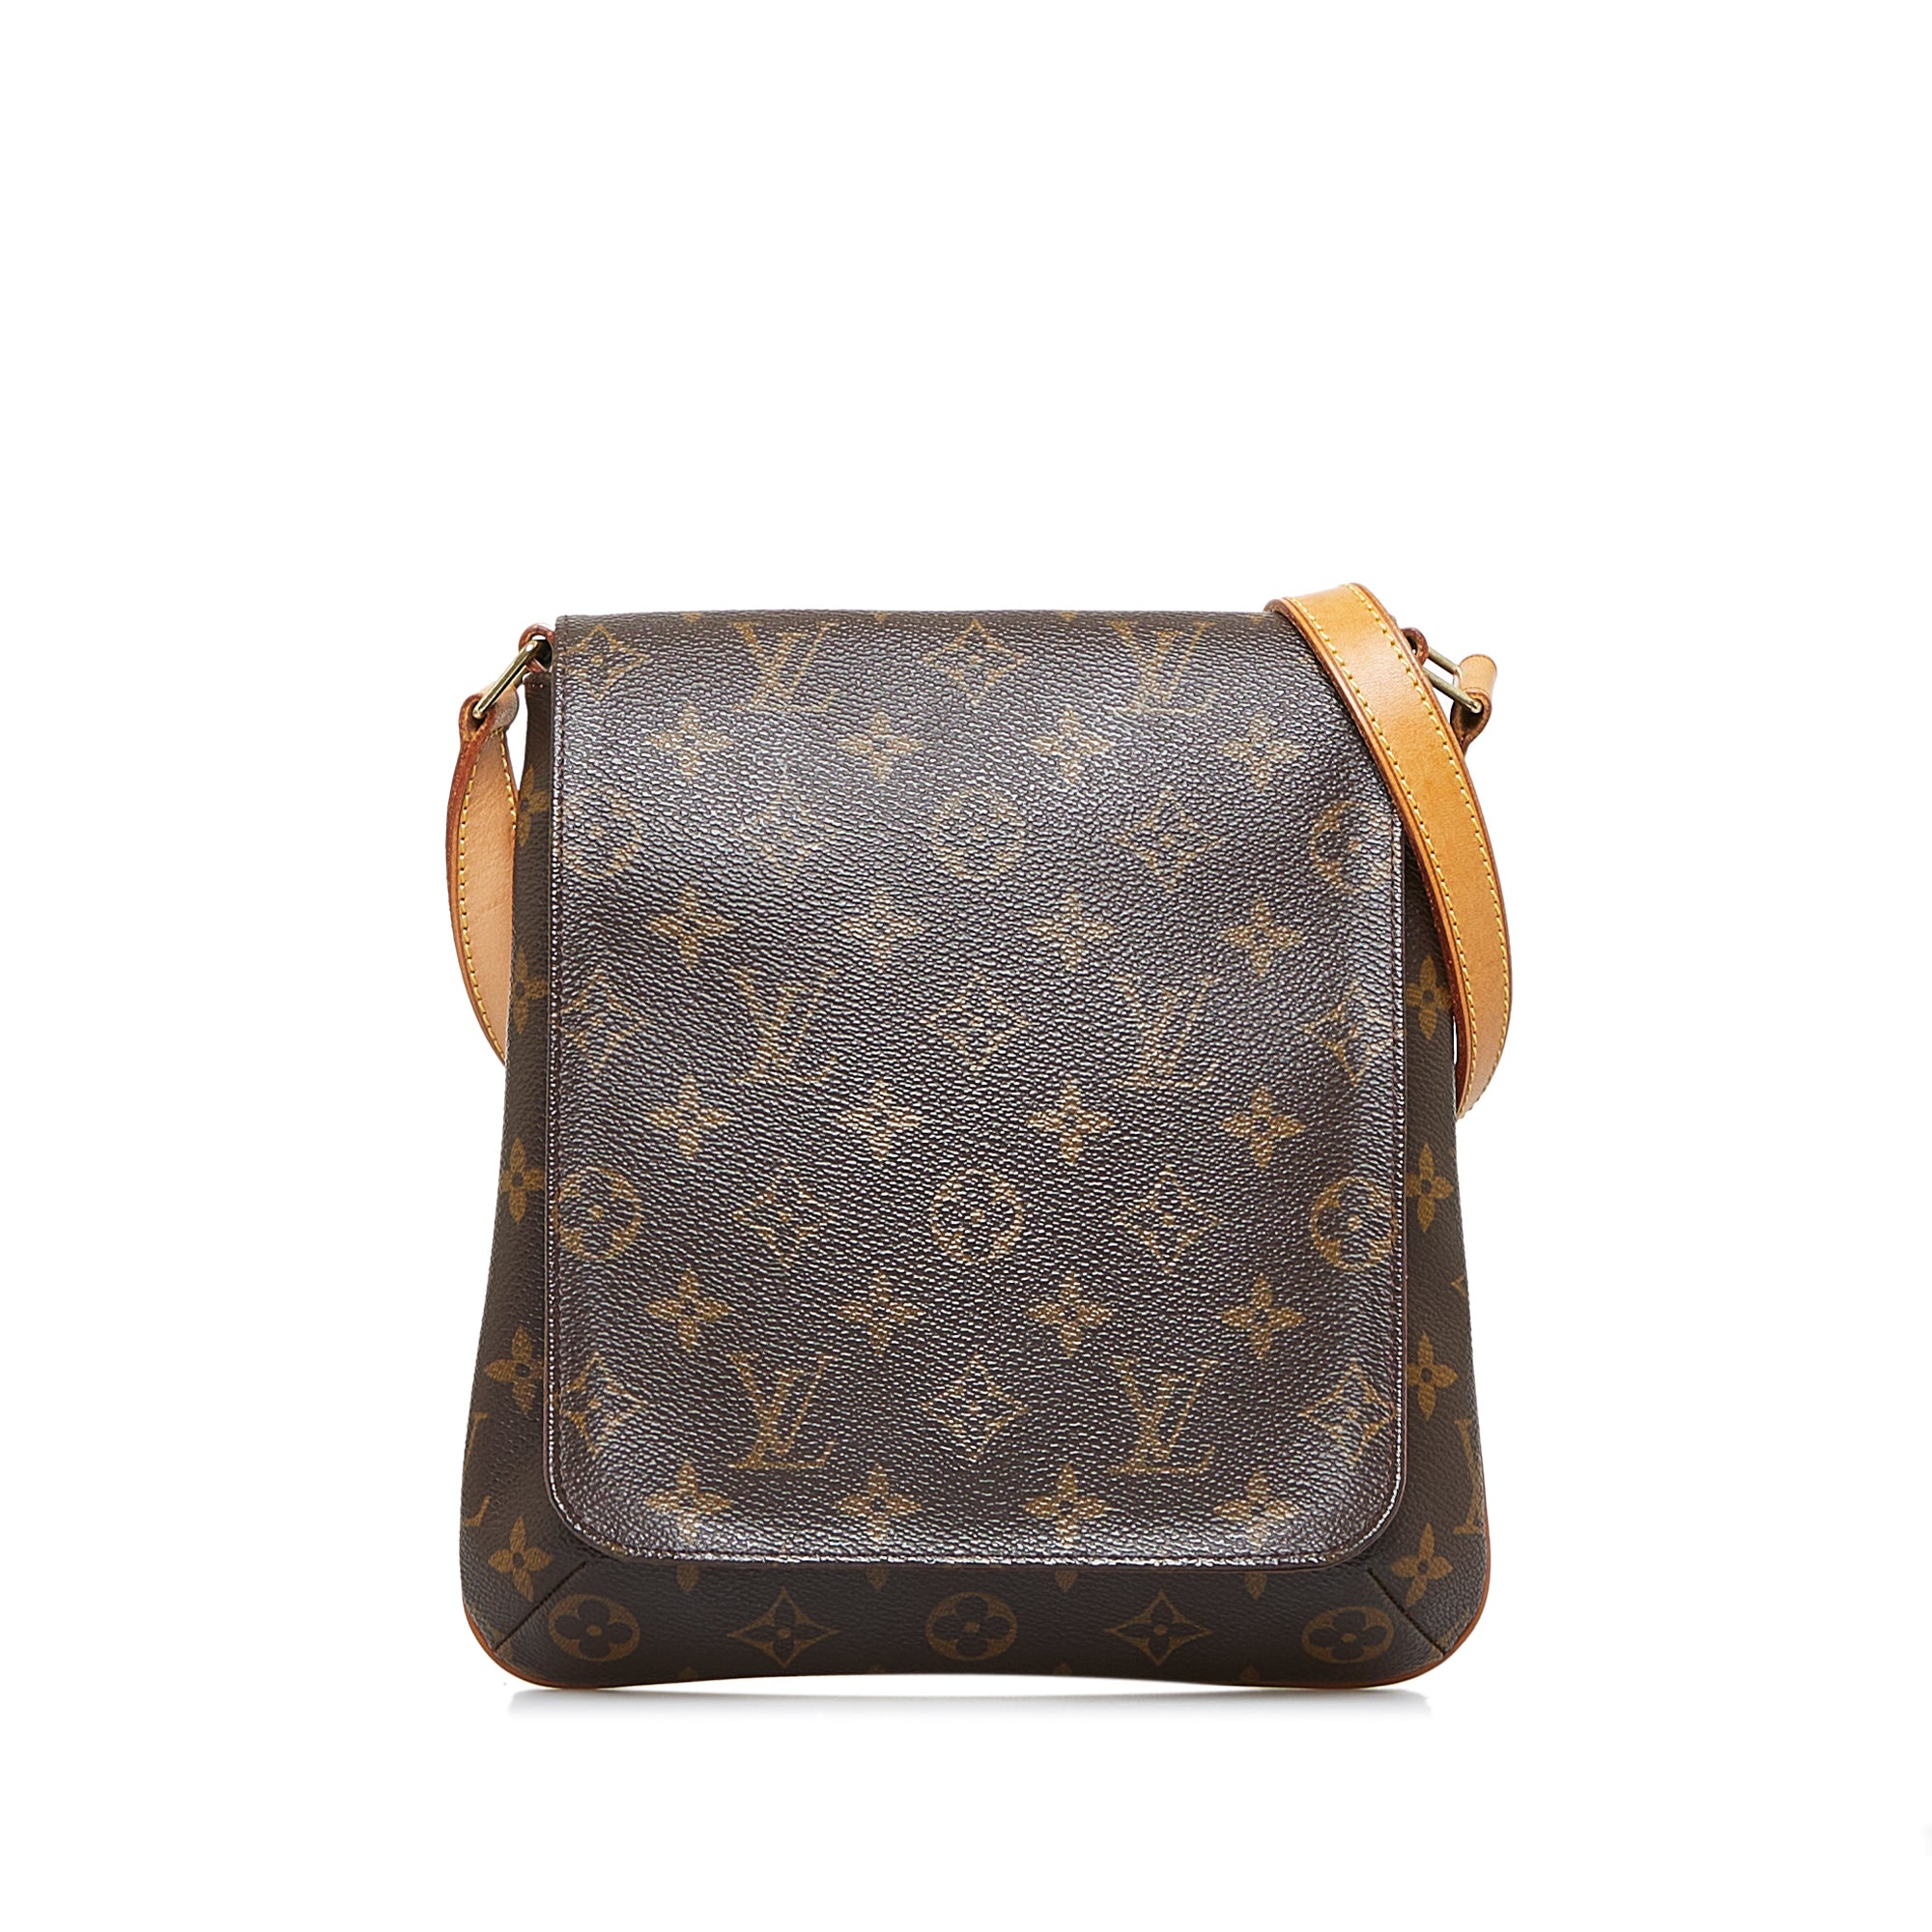 Louis Vuitton Musette salsa handbag - Excellent condition